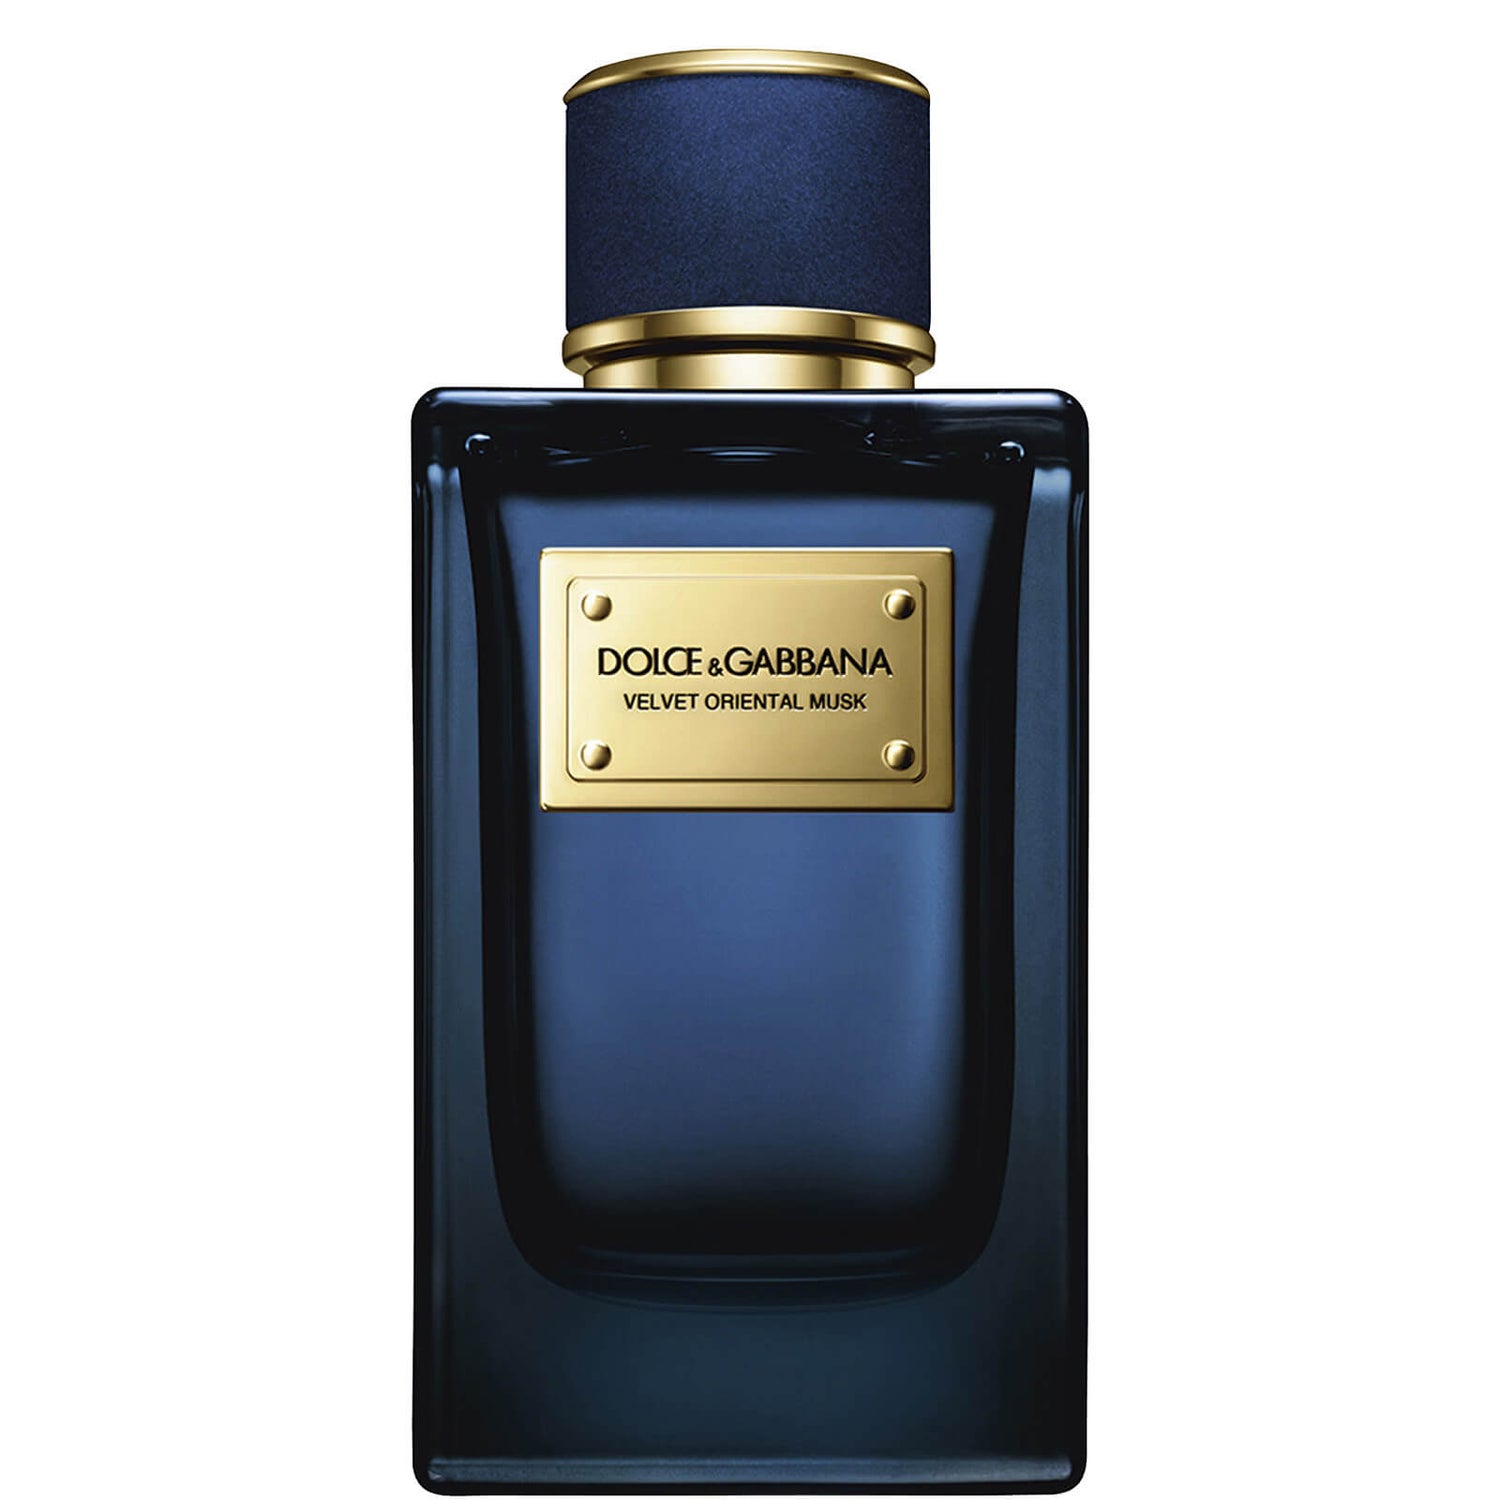 Dolce&Gabbana Velvet Oriental Musk Eau de Parfum - 150ml